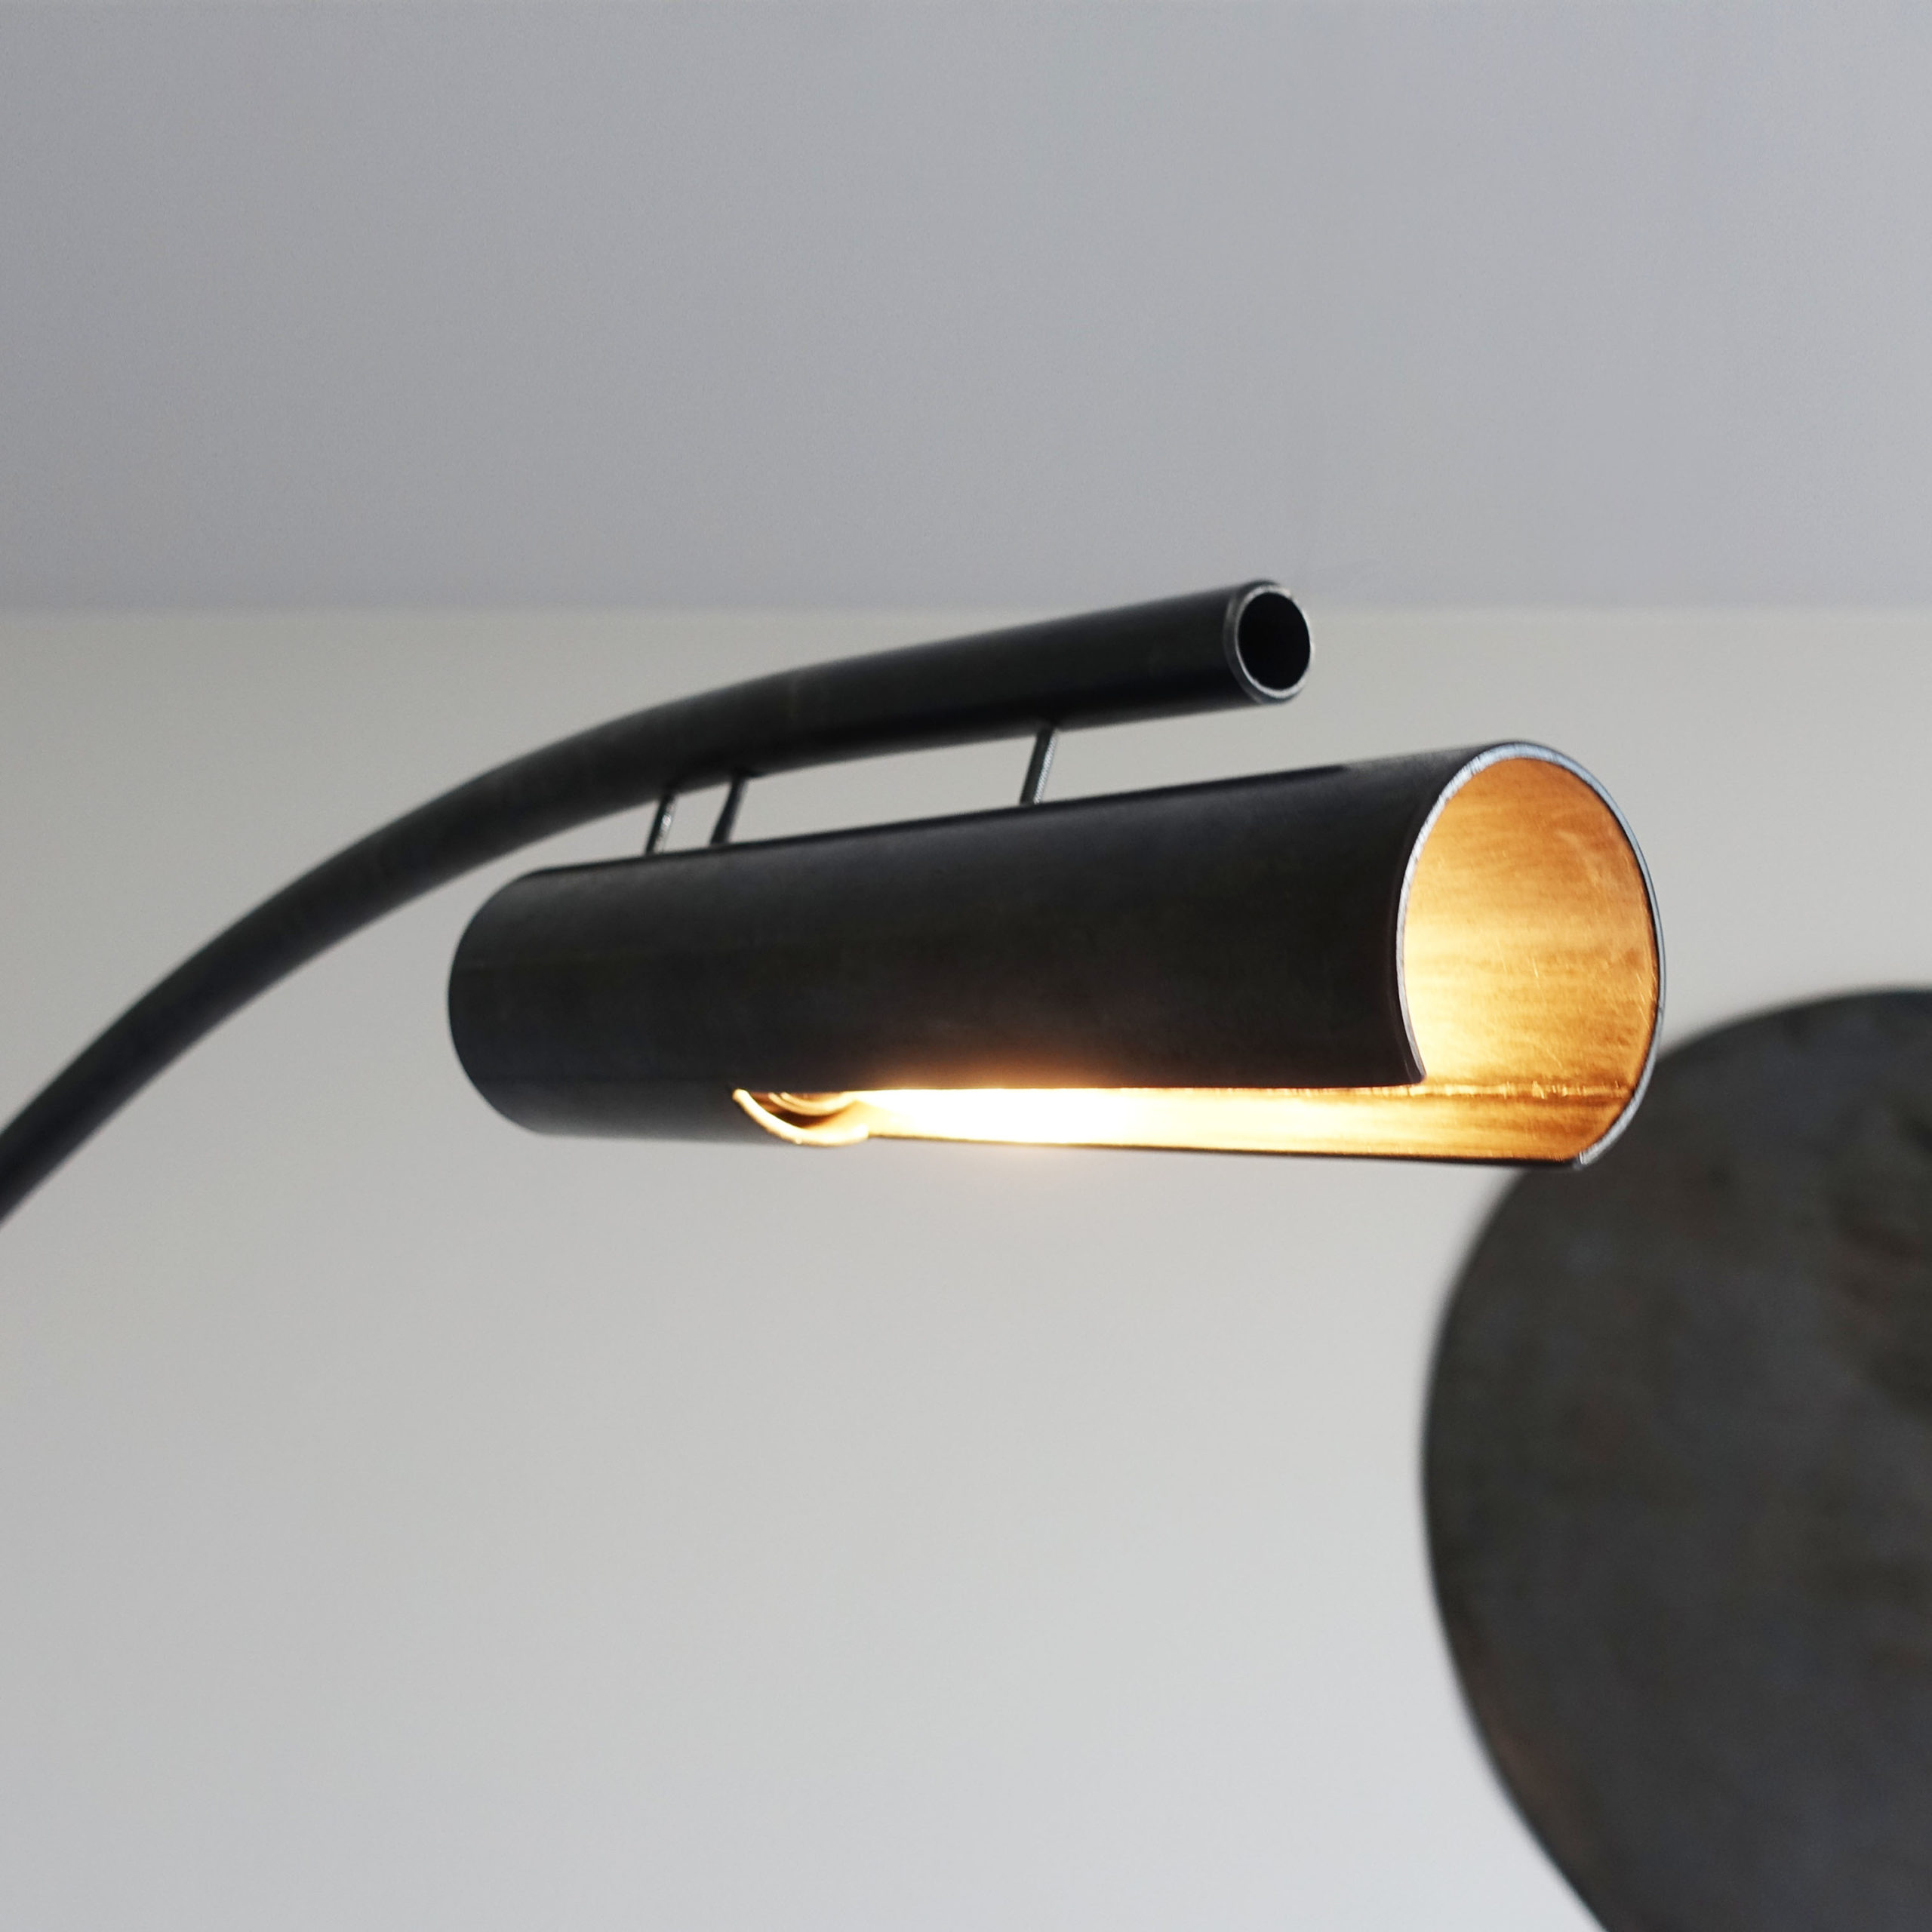 Zopkuú - Lampe Lampe sur pied métal - Industrial Delirium